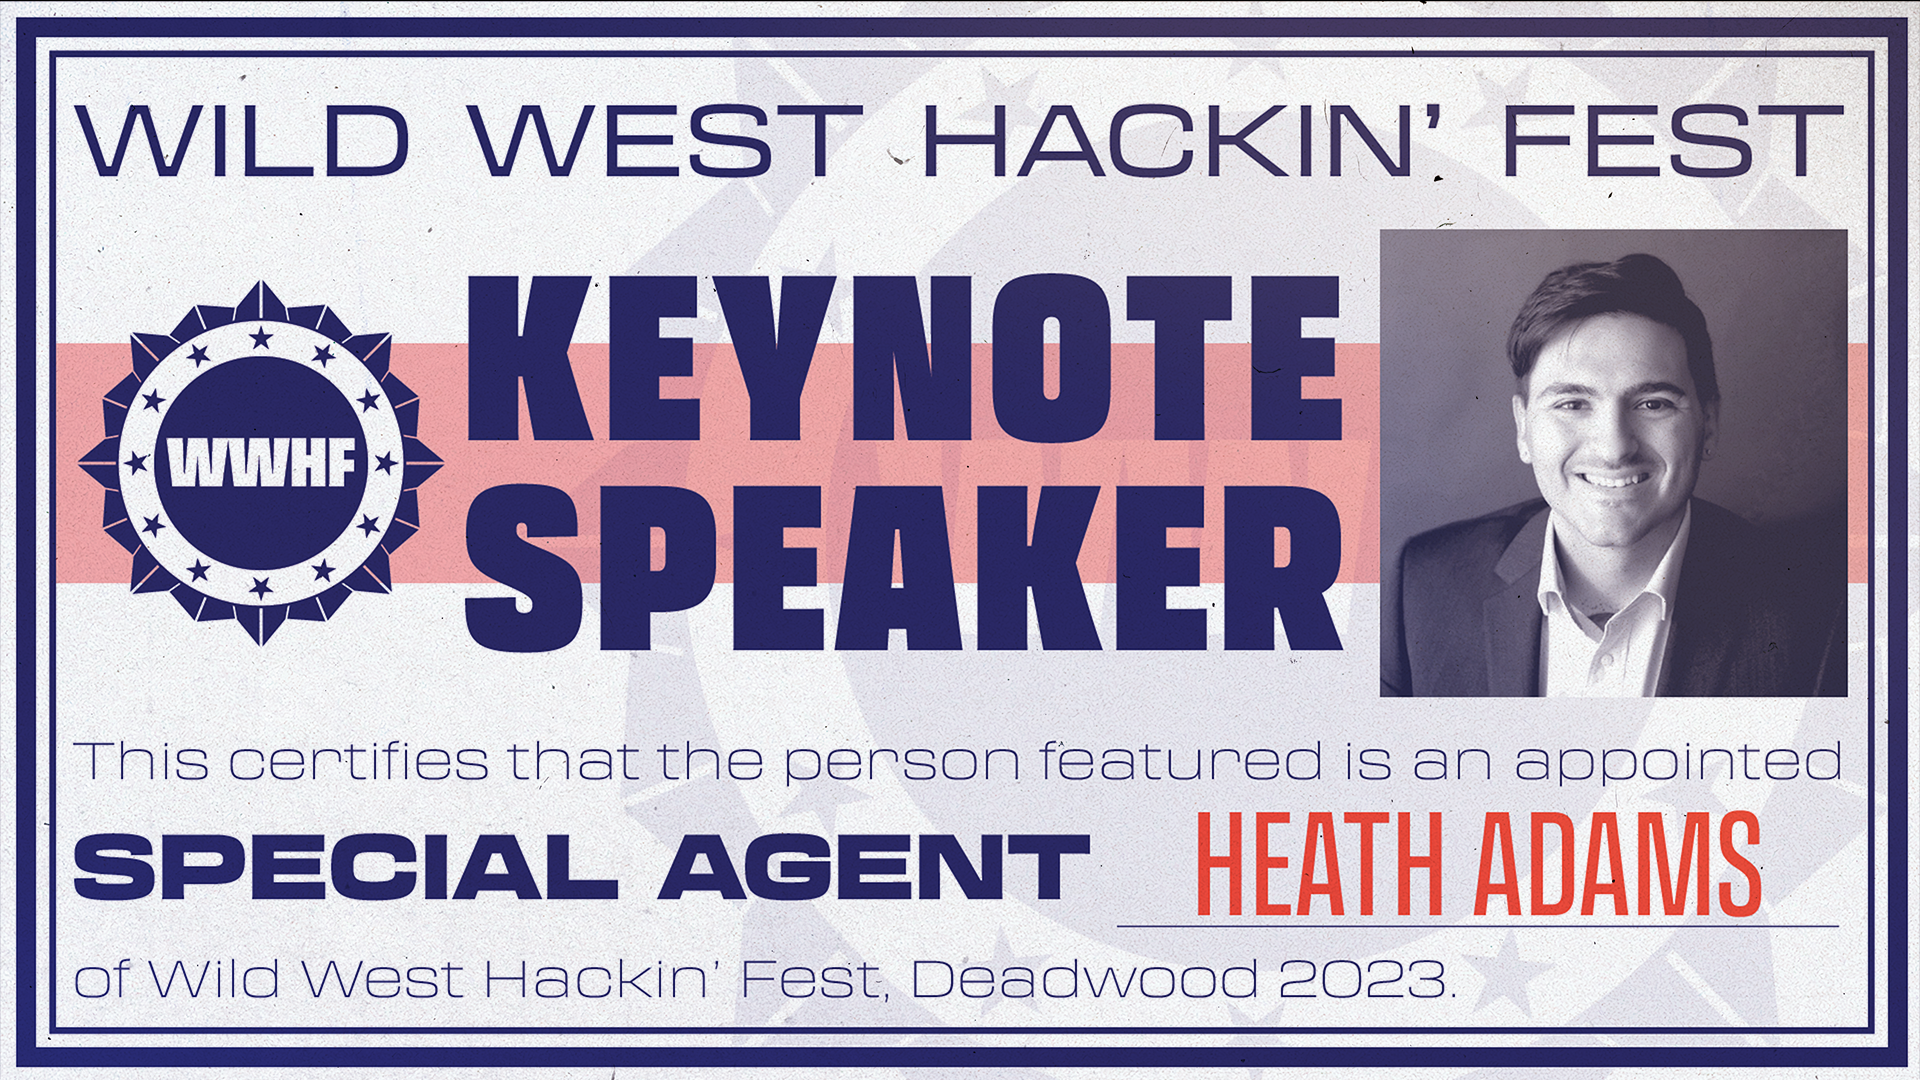 Wild West Hackin' Fest Keynote Speaker: Heath Adams